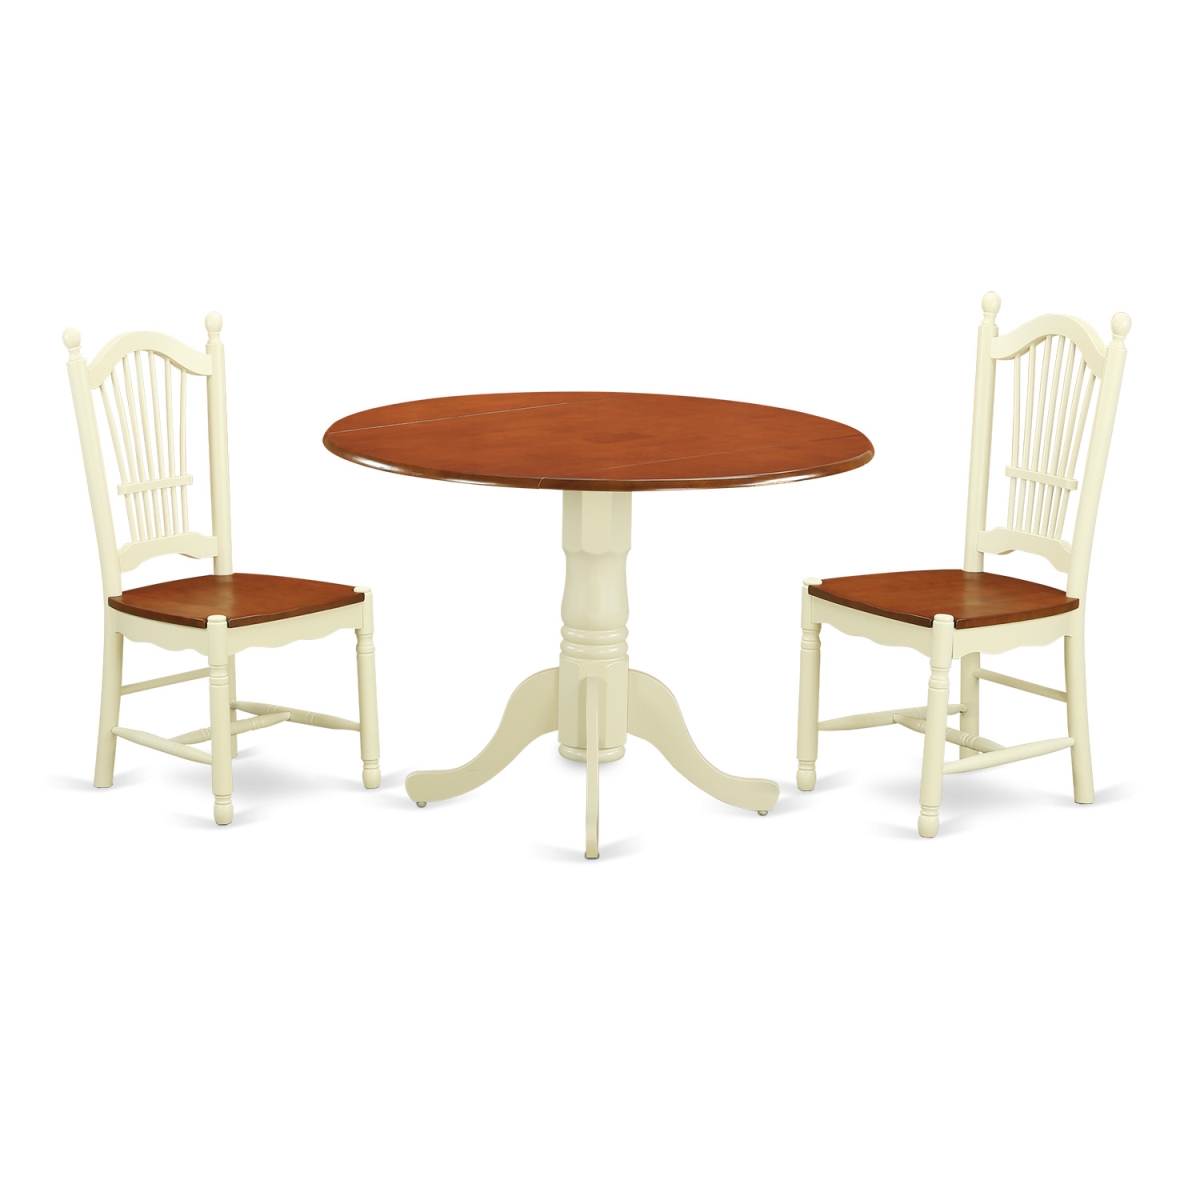 Kitchen Dinette Set - Kitchen Table & 2 Chairs, Buttermilk & Cherry - 3 Piece